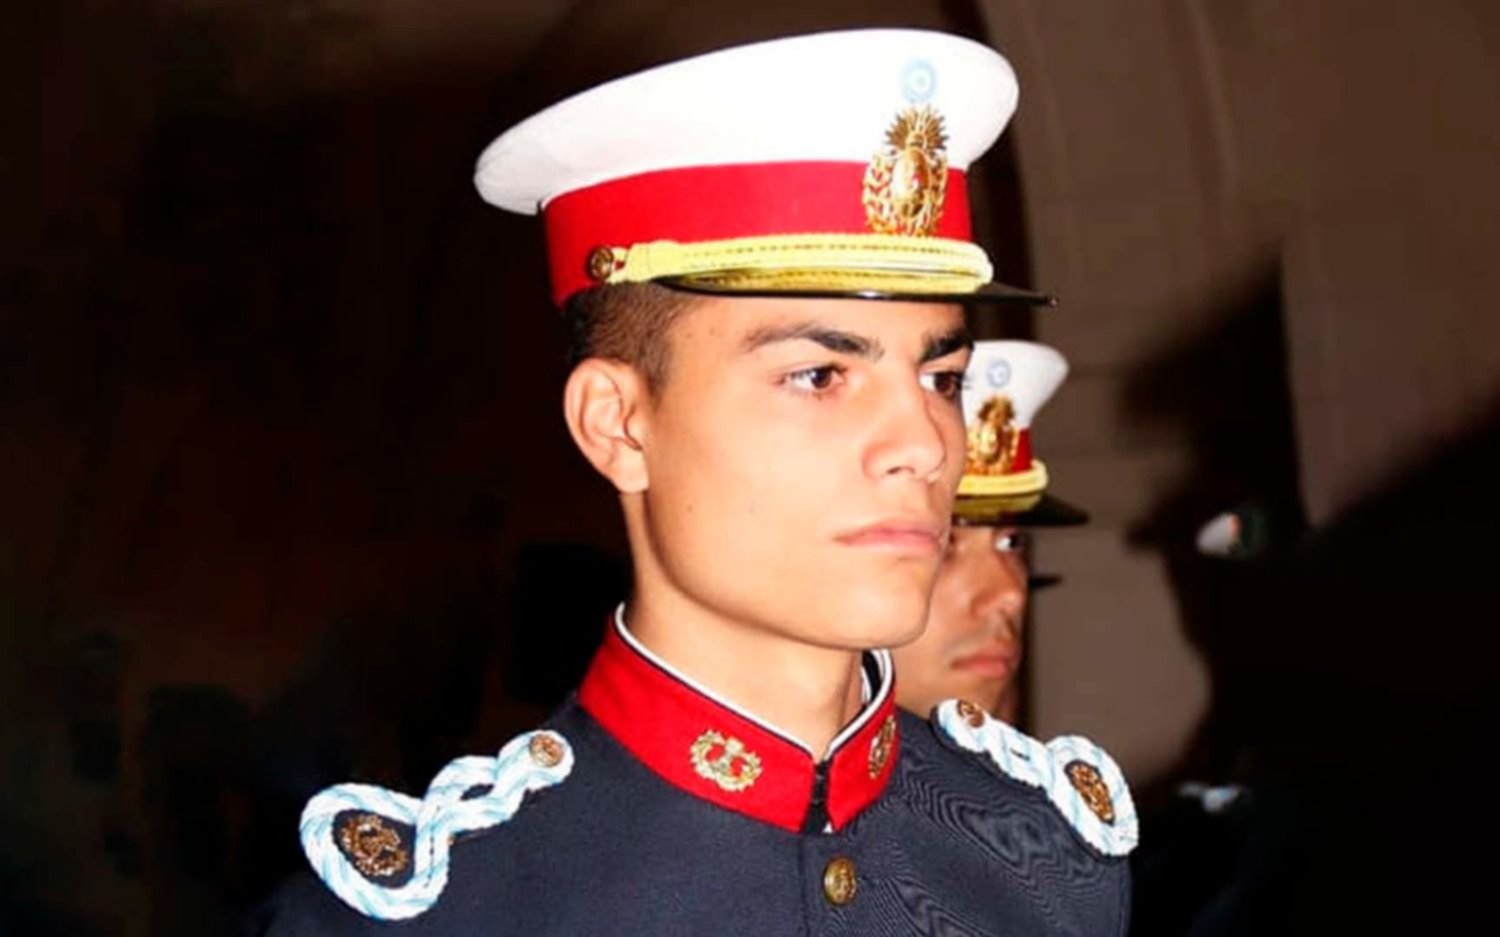 Subteniente de 22 años del Ejército Argentino murió tras fiesta de iniciación: qué se sabe hasta ahora